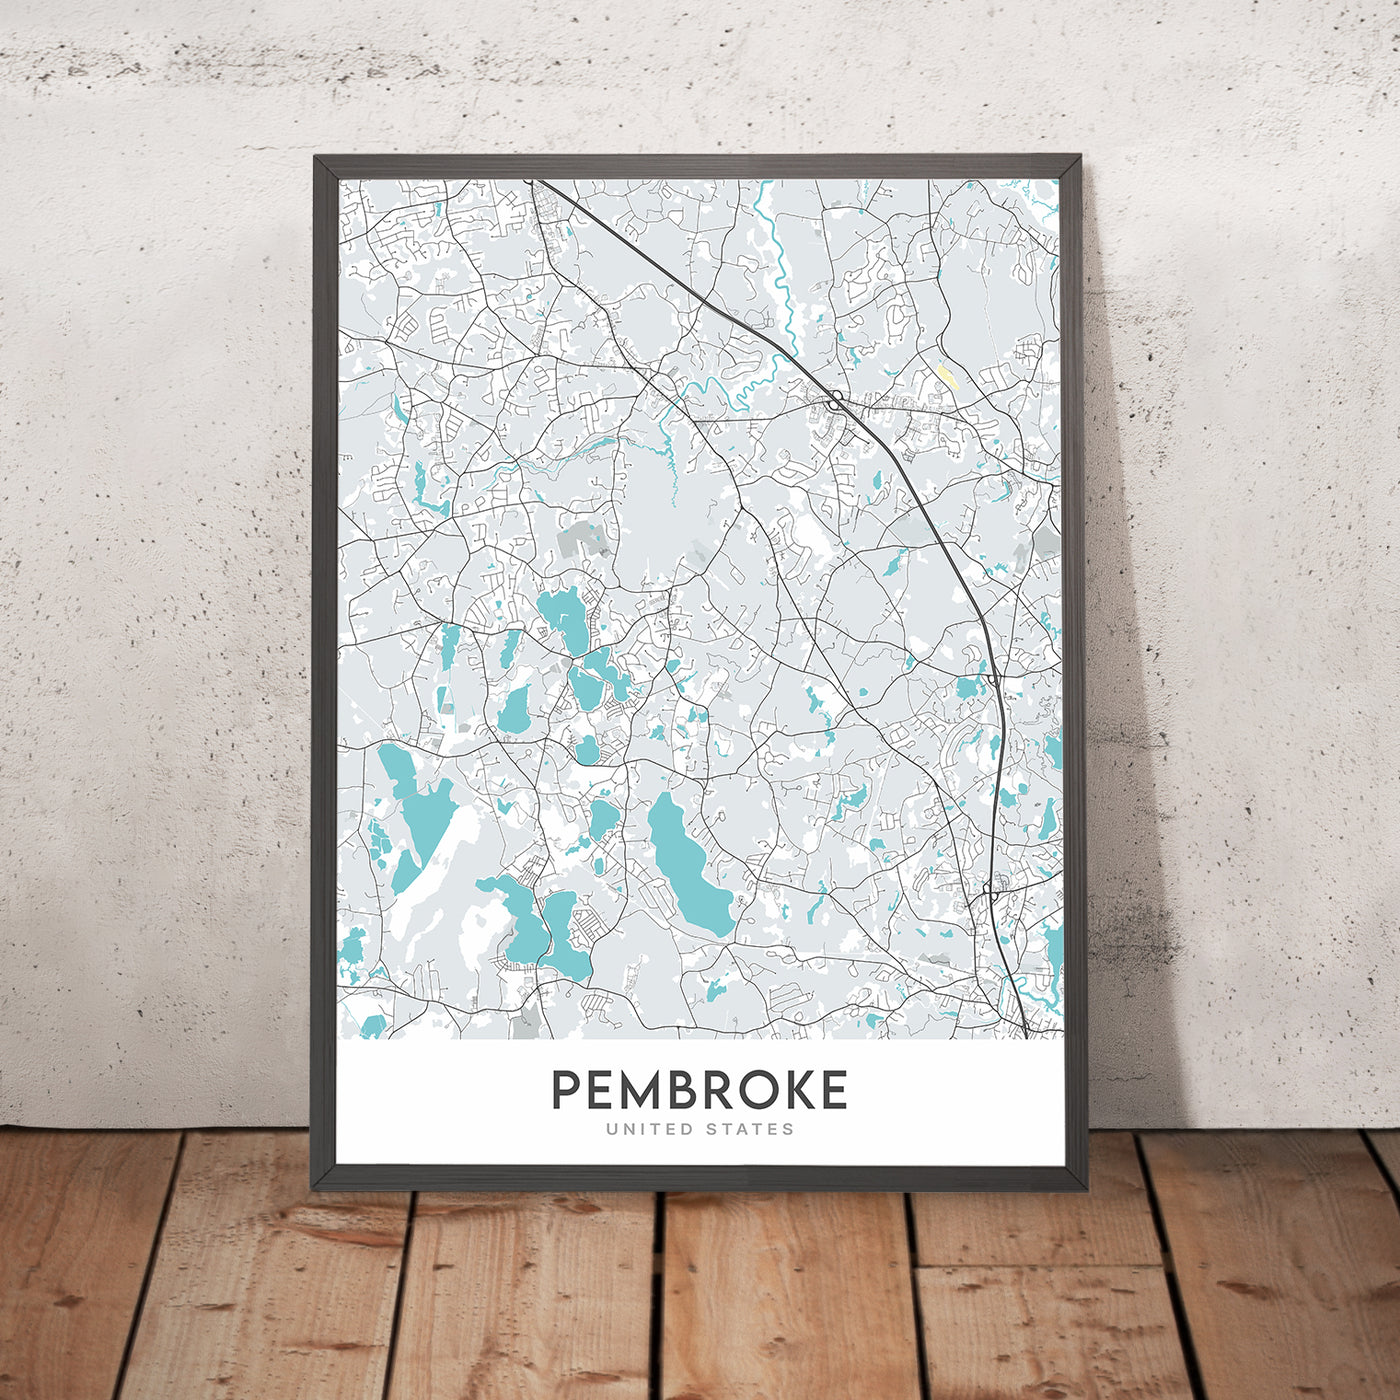 Modern City Map of Pembroke, MA: Pembroke Center, Bryantville, North Pembroke, West Pembroke, Pembroke Pines